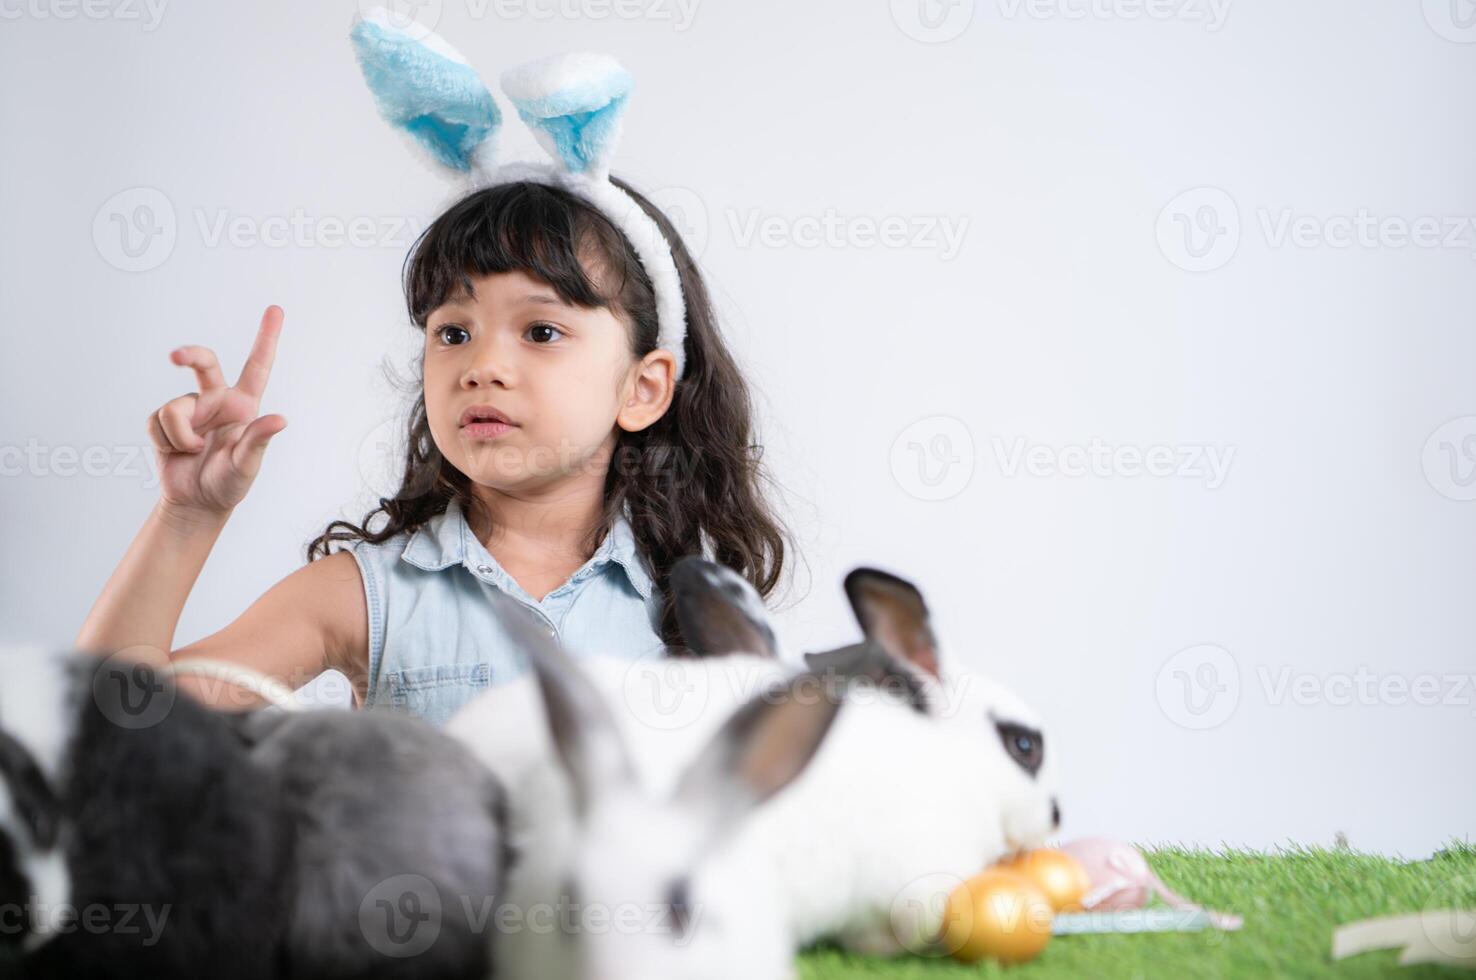 sorridente pequeno menina e com seus Amado fofo coelho, exibindo a beleza do amizade entre humanos e animais foto